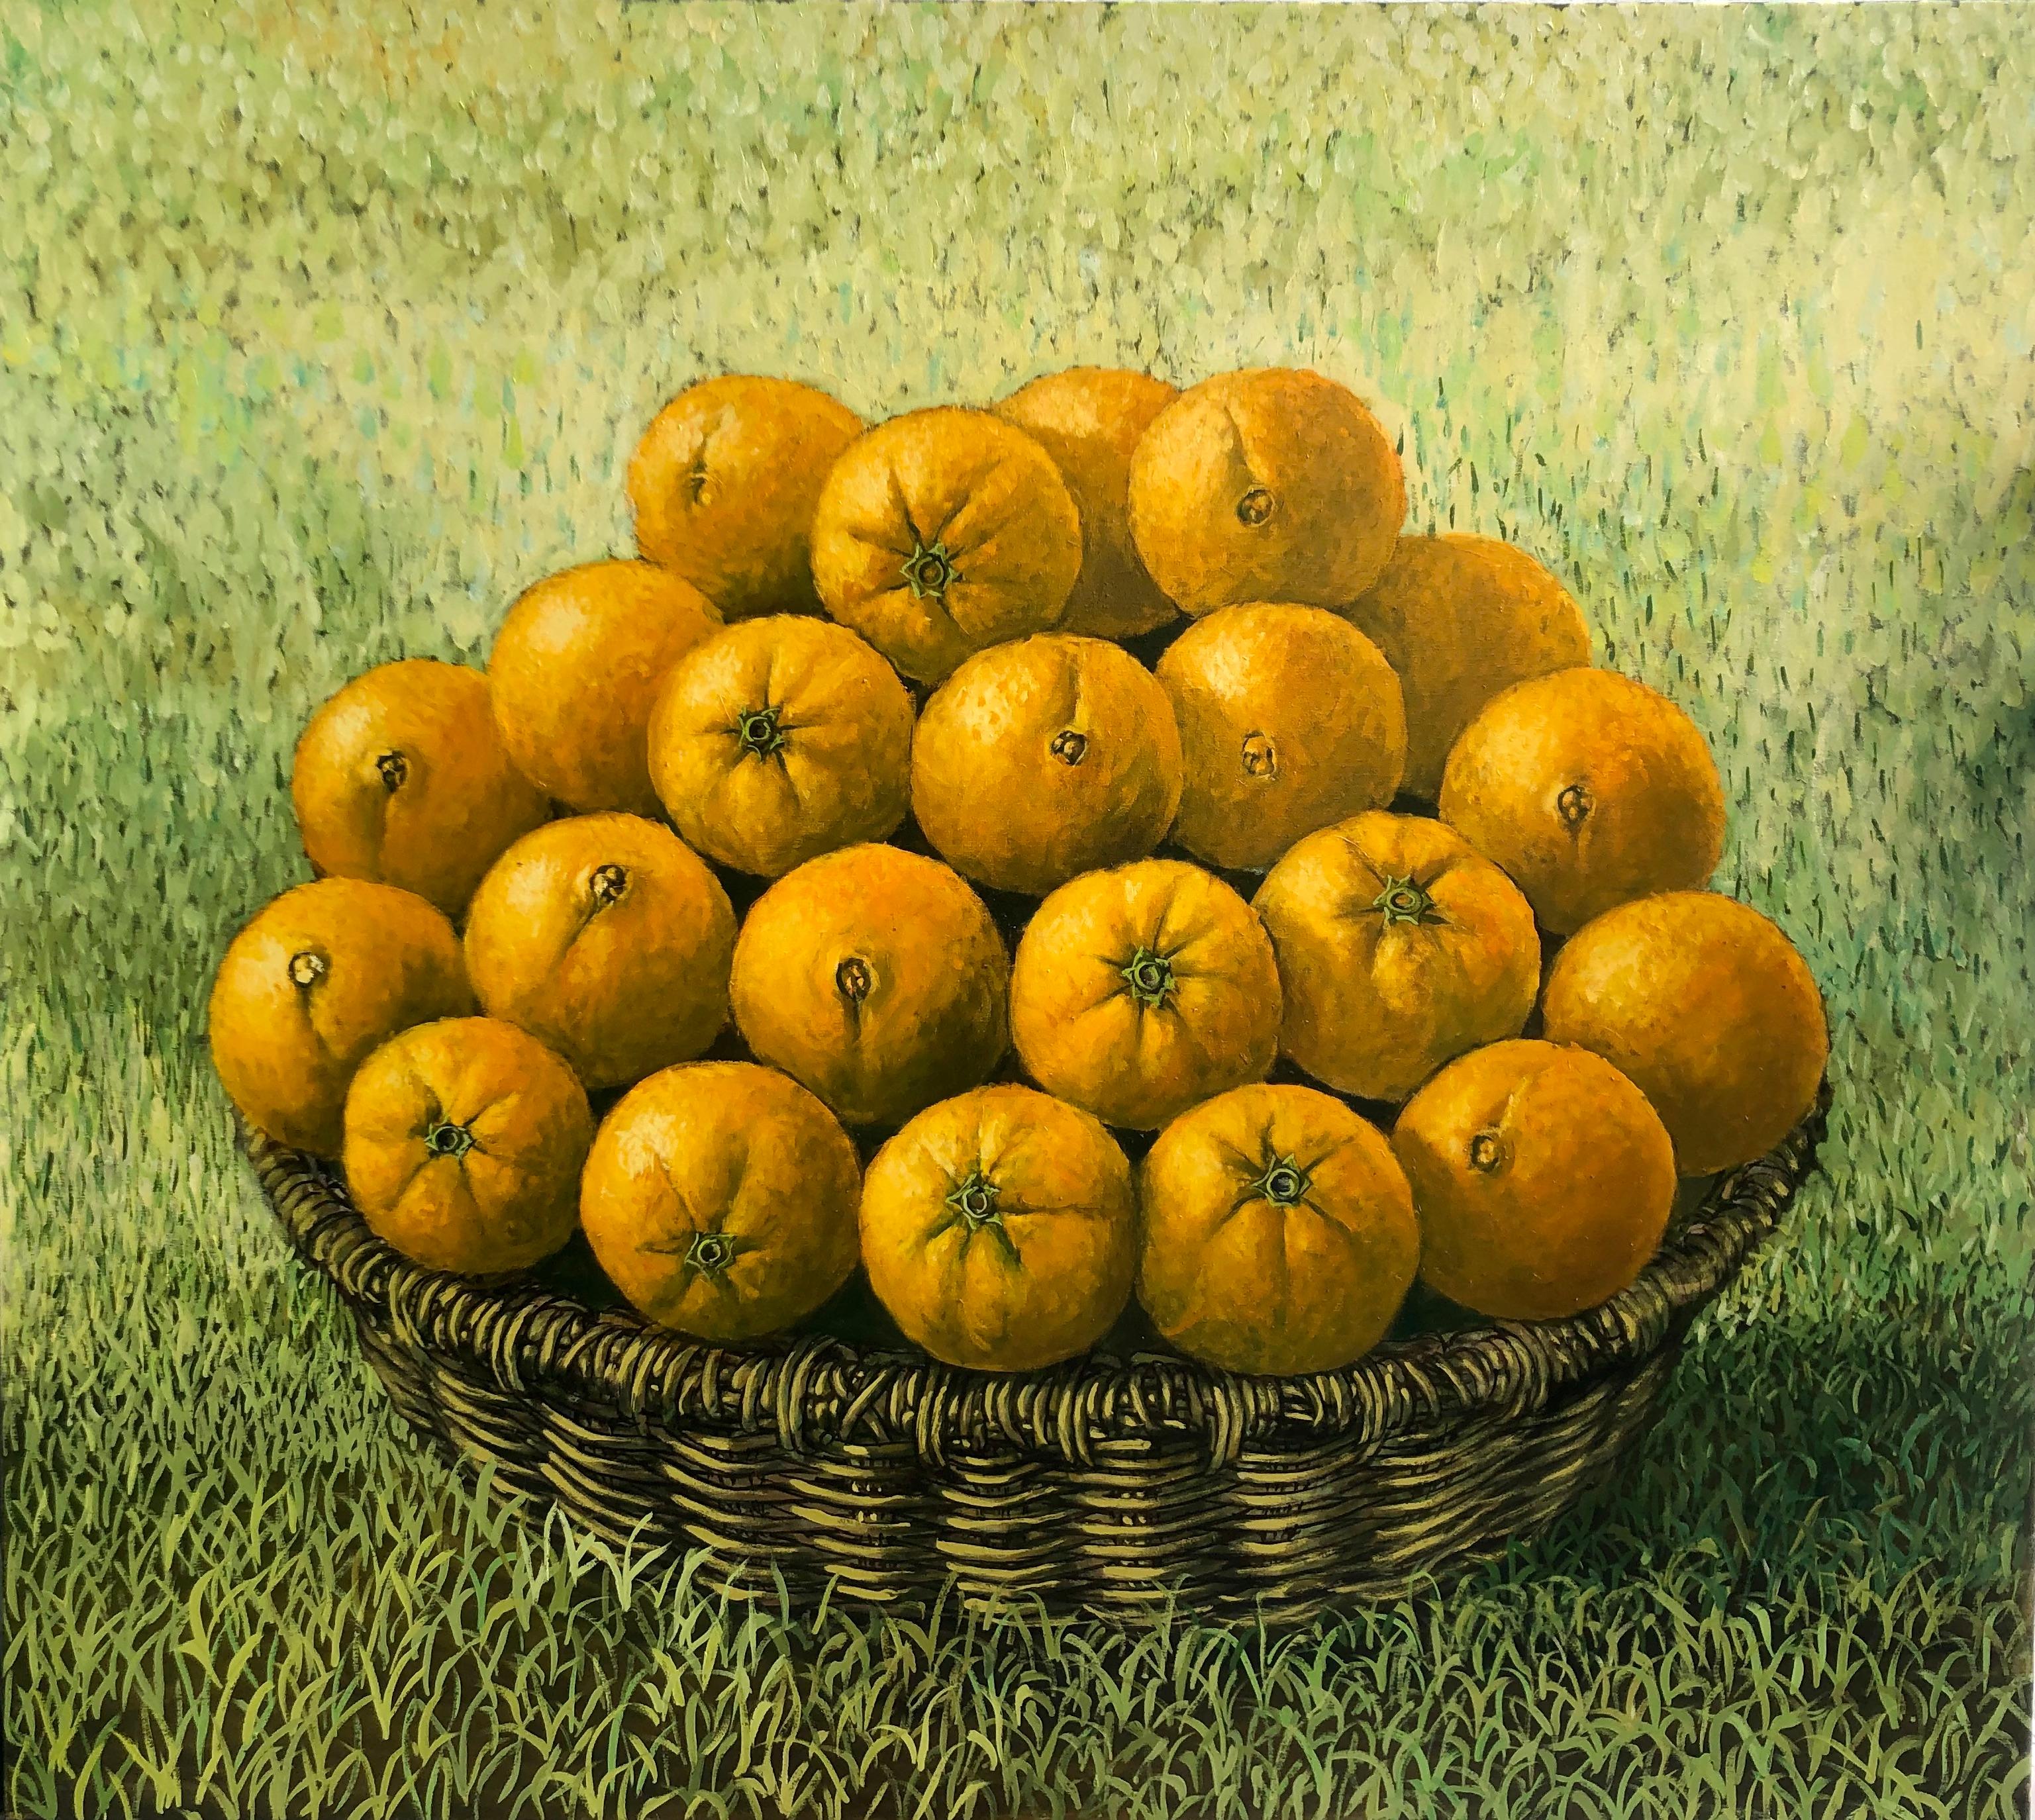  Nature morte avec des oranges dans le panier.
RAFAEL SALDARRIAGA est né à Medellin, en Colombie, en 1955. Arrivé aux États-Unis en 1993. Après avoir vécu au Nouveau Mexique et à Hawaï, il s'est installé à New York.
Il a étudié à l'académie d'art de